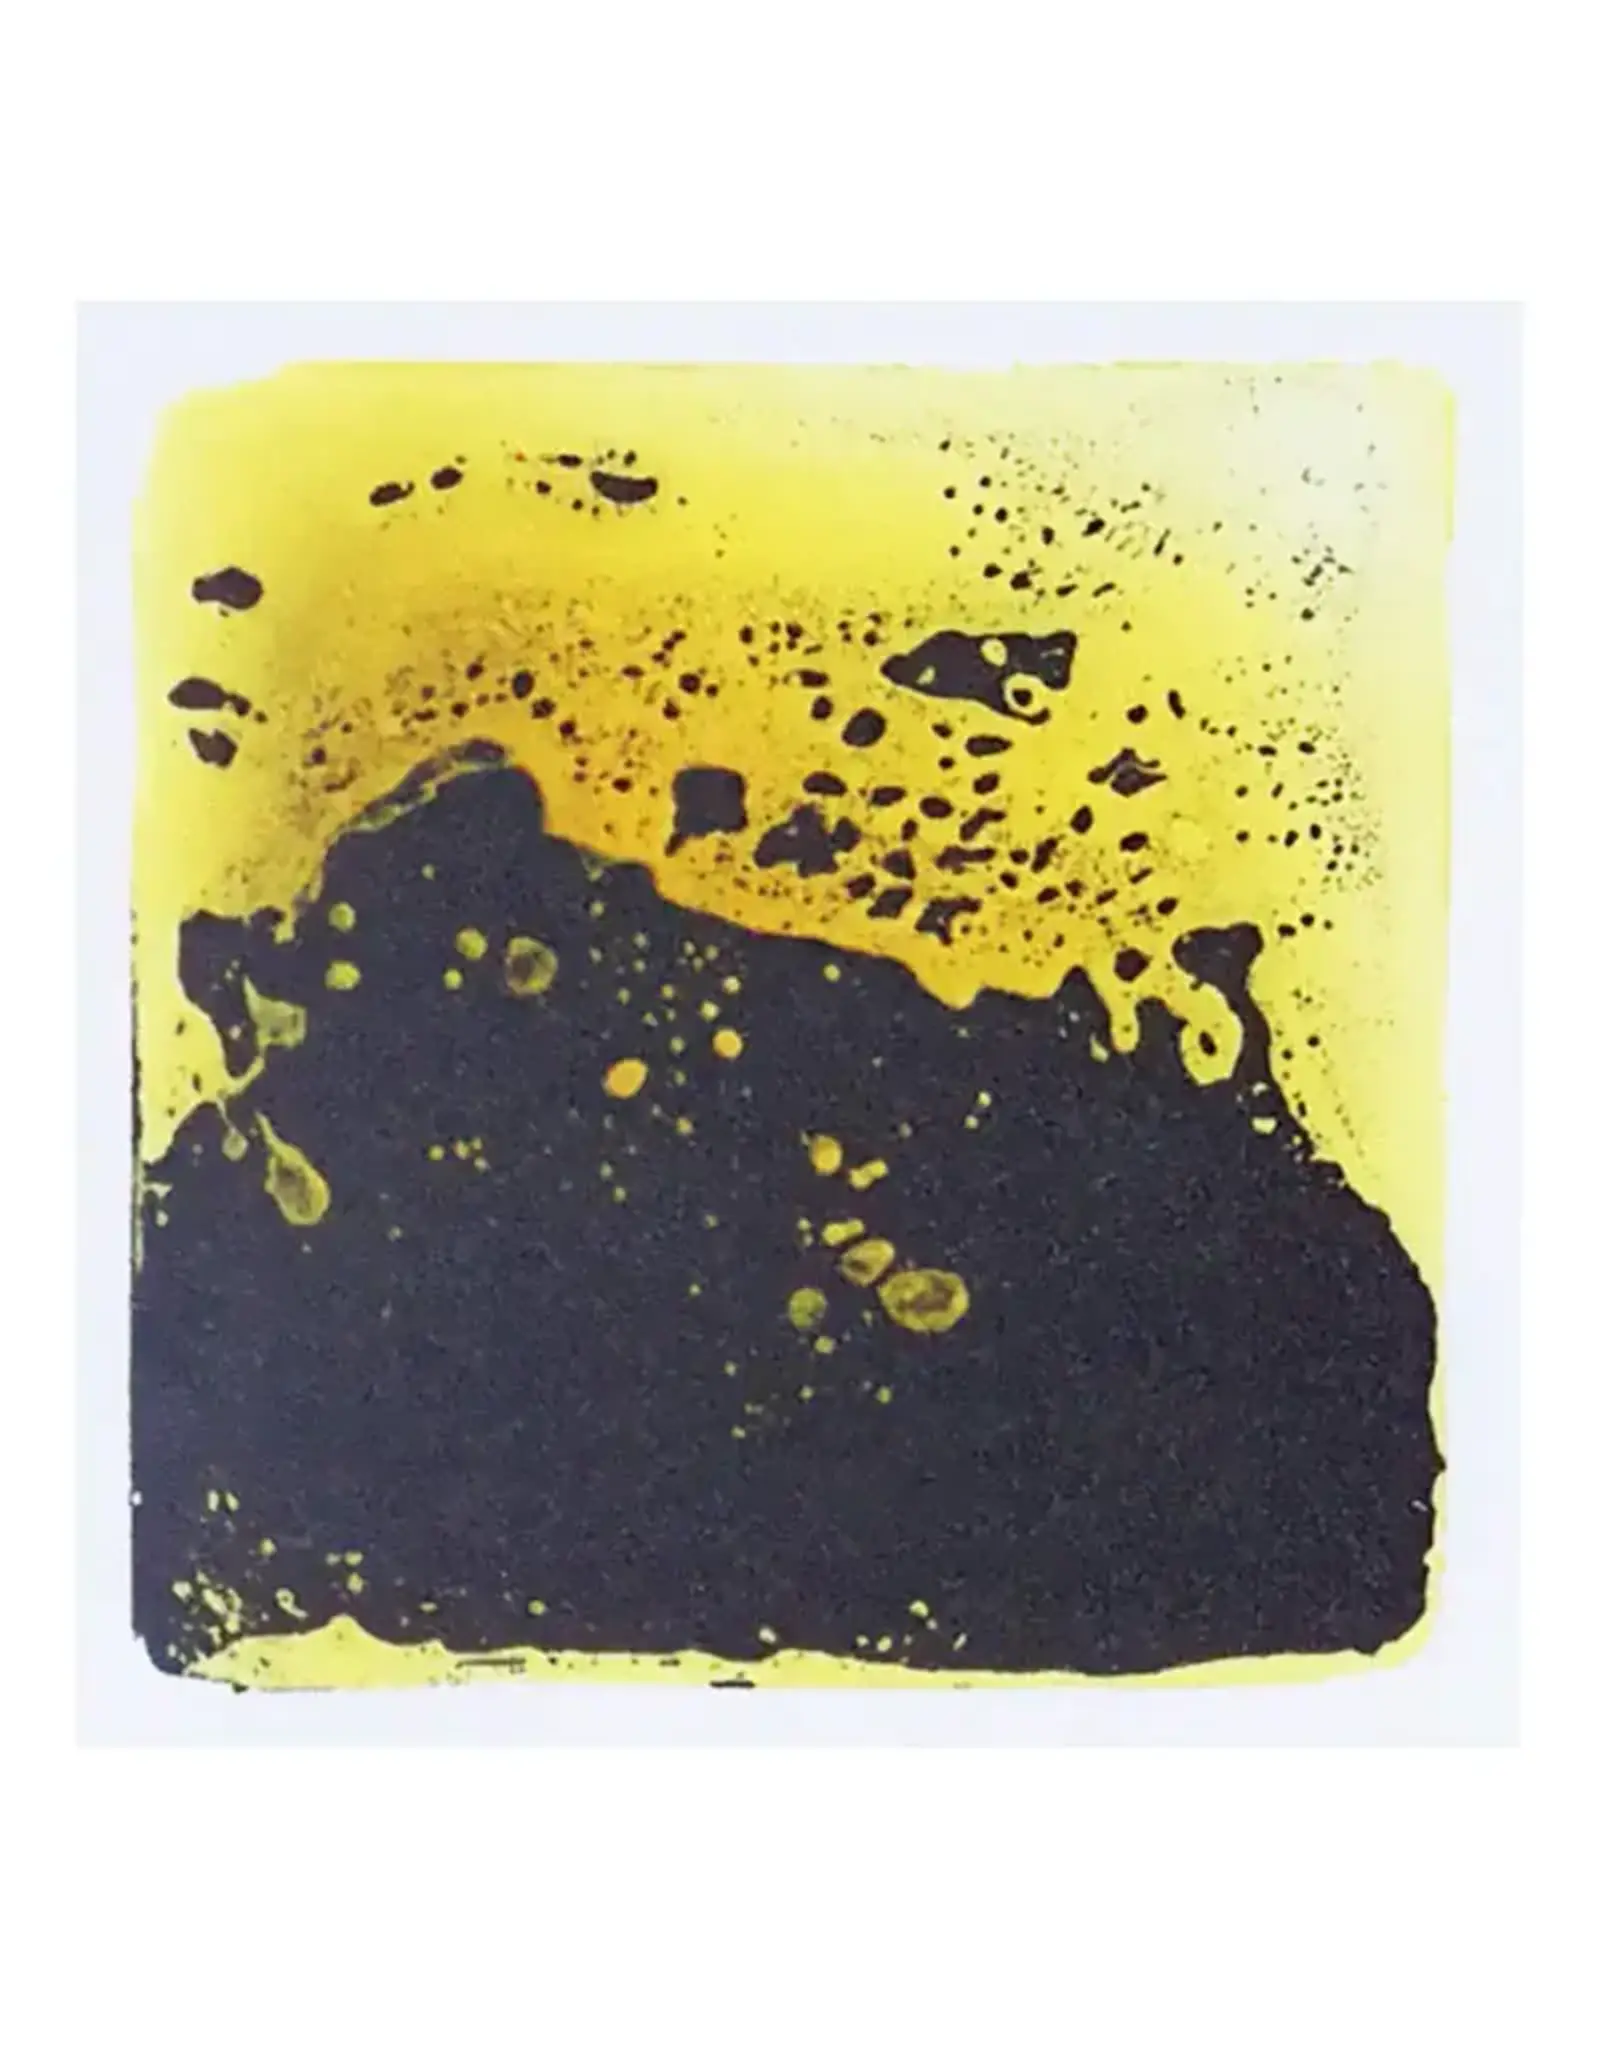 Spooner Inc. Liquid Floor Tiles Yellow and Black